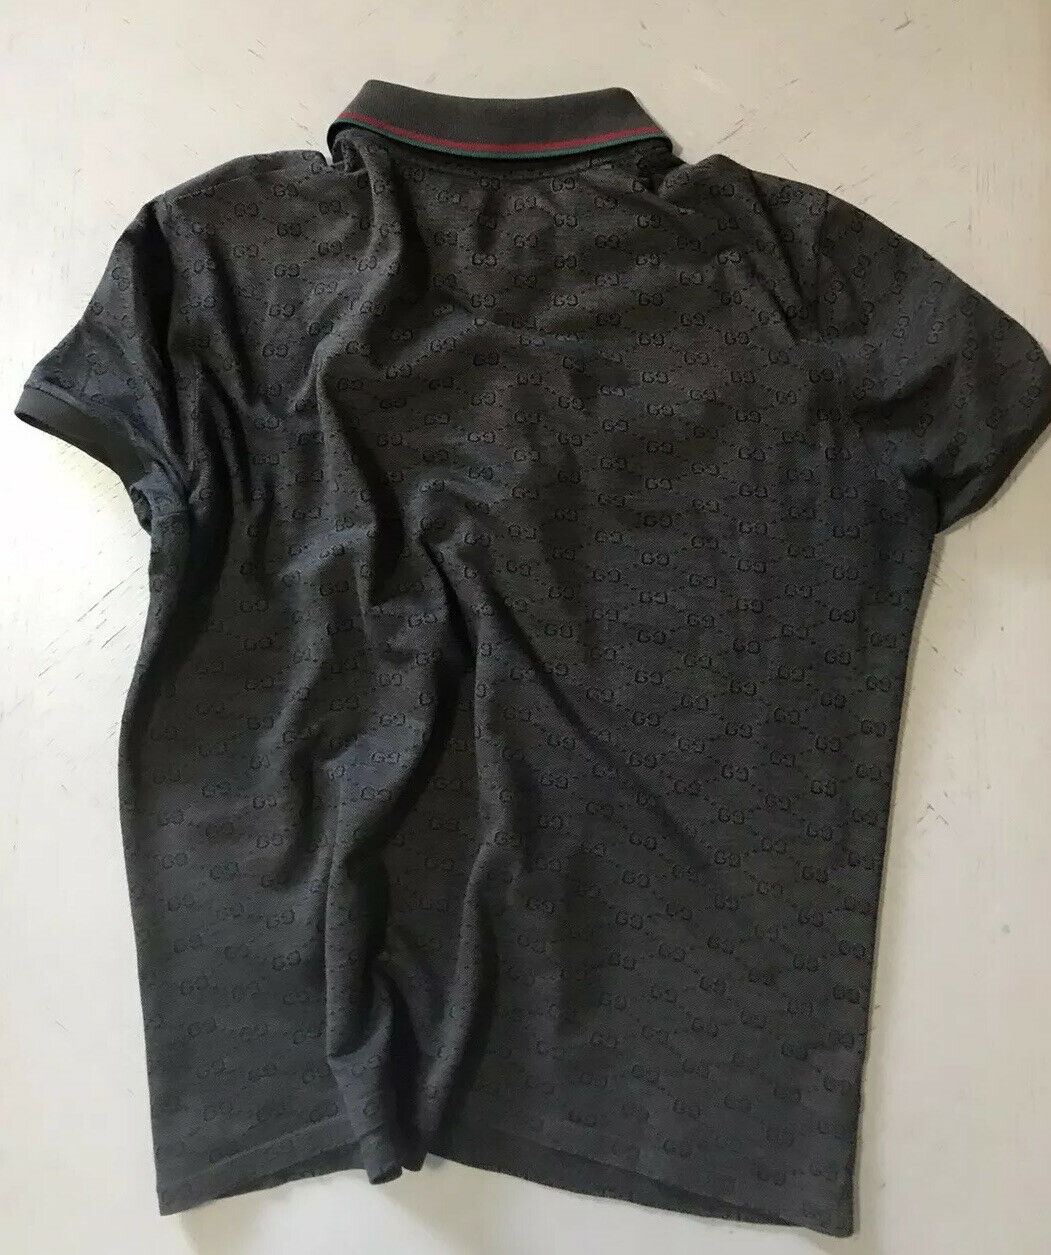 Мужская рубашка-поло Gucci с монограммой GG, коричневая, размер L